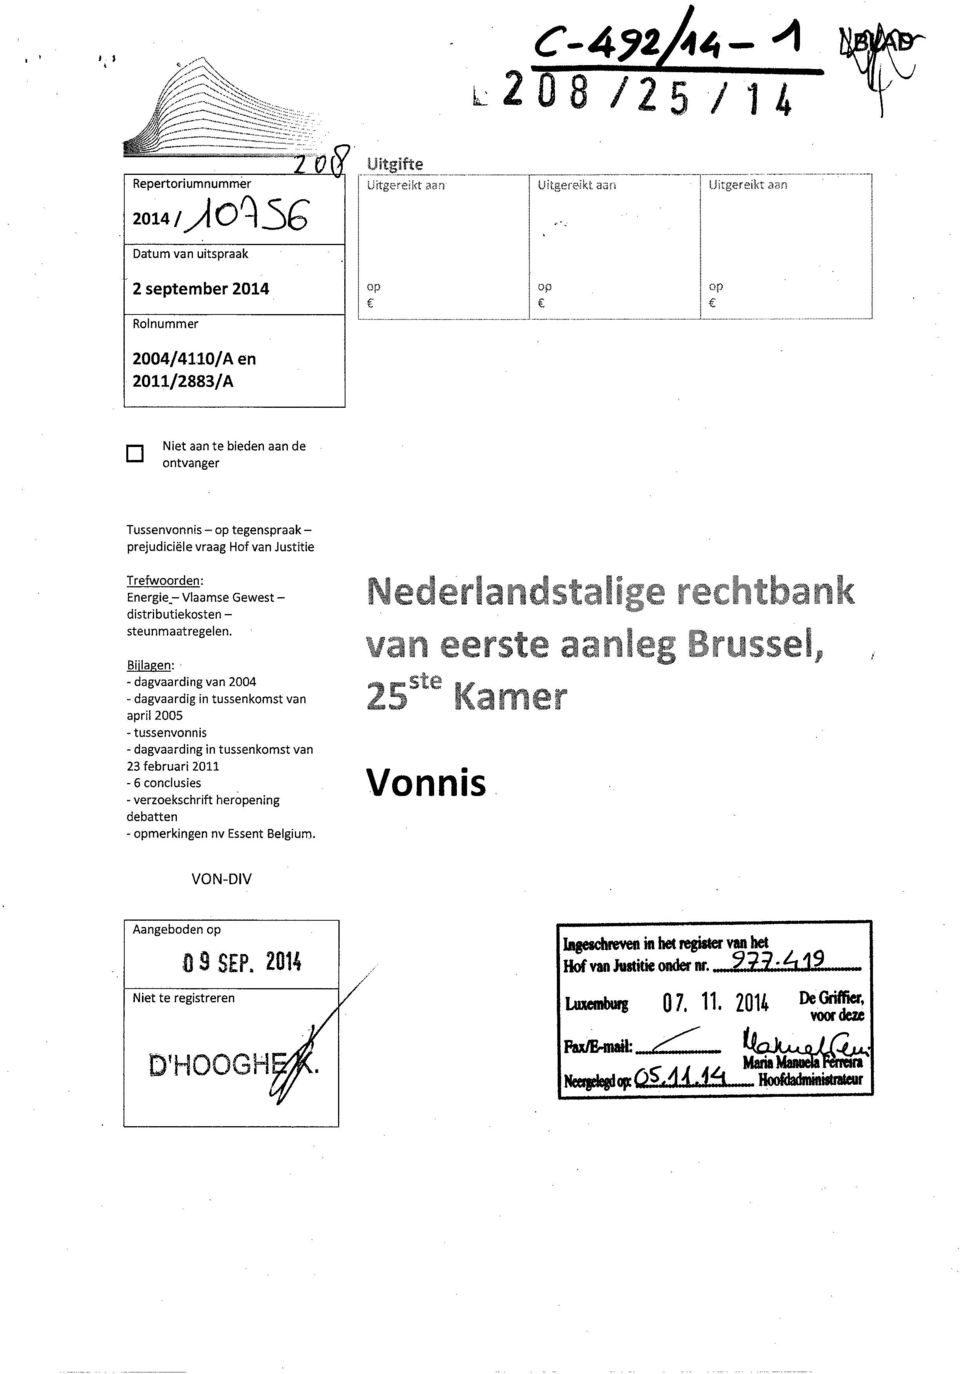 tegenspraakprejudiciële vraag Hof van Justitie Trefwoorden: Energie_- Vlaamse Gewestdistributiekosten - steunmaatregelen.